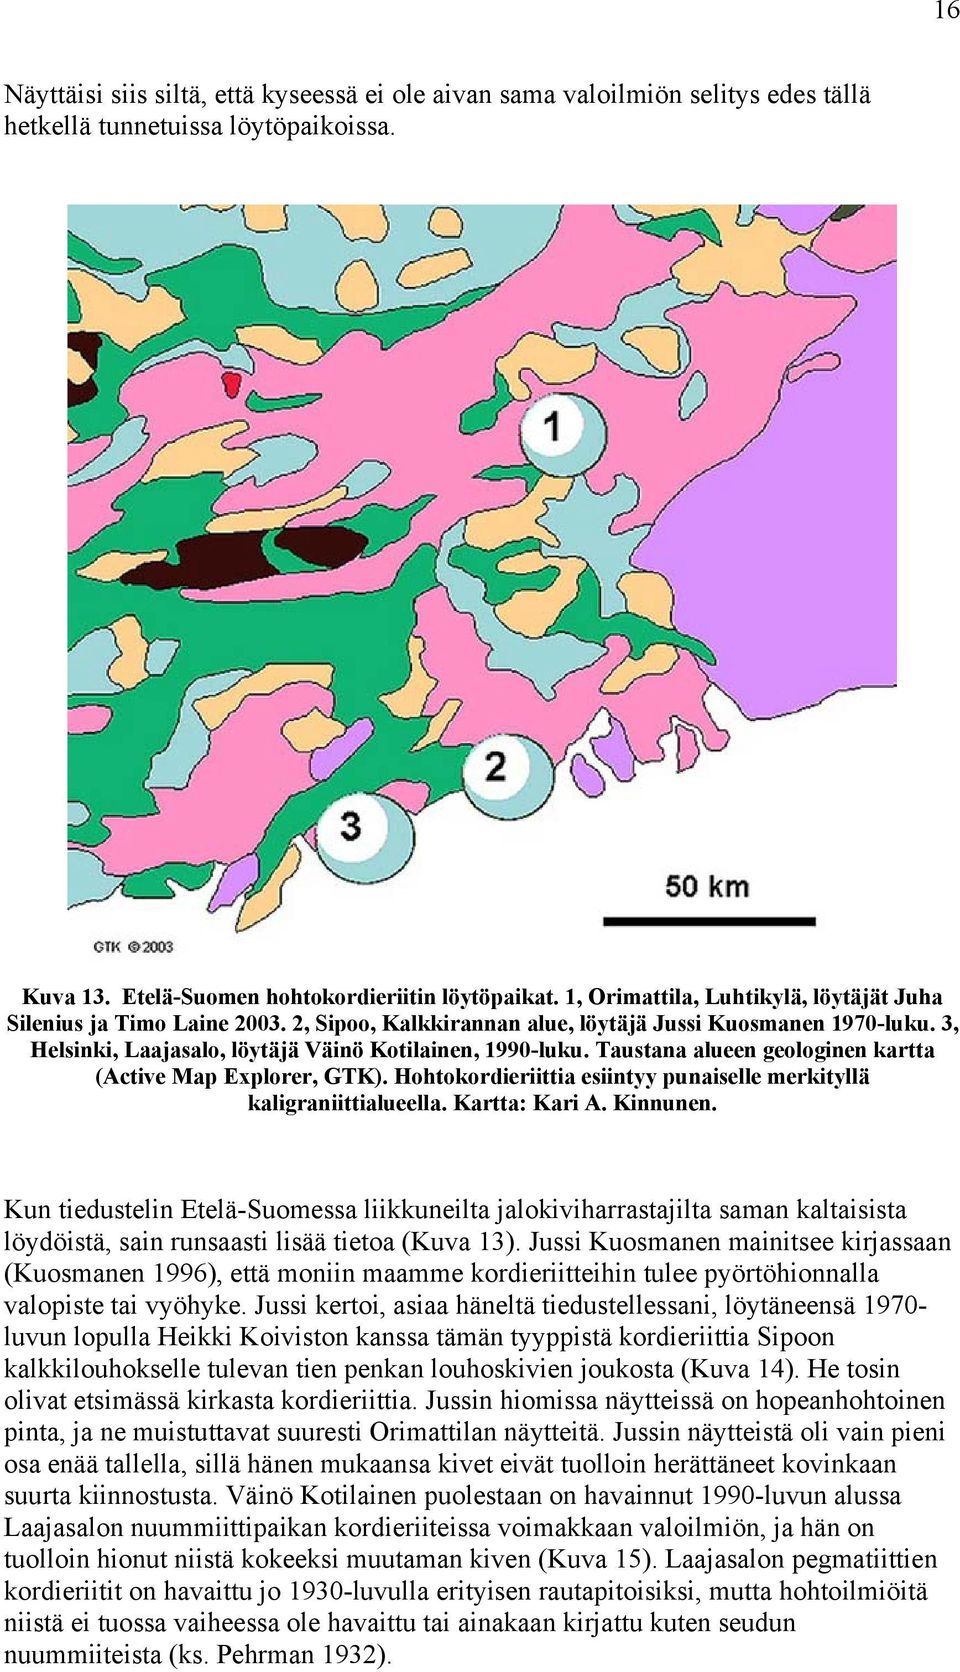 Taustana alueen geologinen kartta (Active Map Explorer, GTK). Hohtokordieriittia esiintyy punaiselle merkityllä kaligraniittialueella. Kartta: Kari A. Kinnunen.